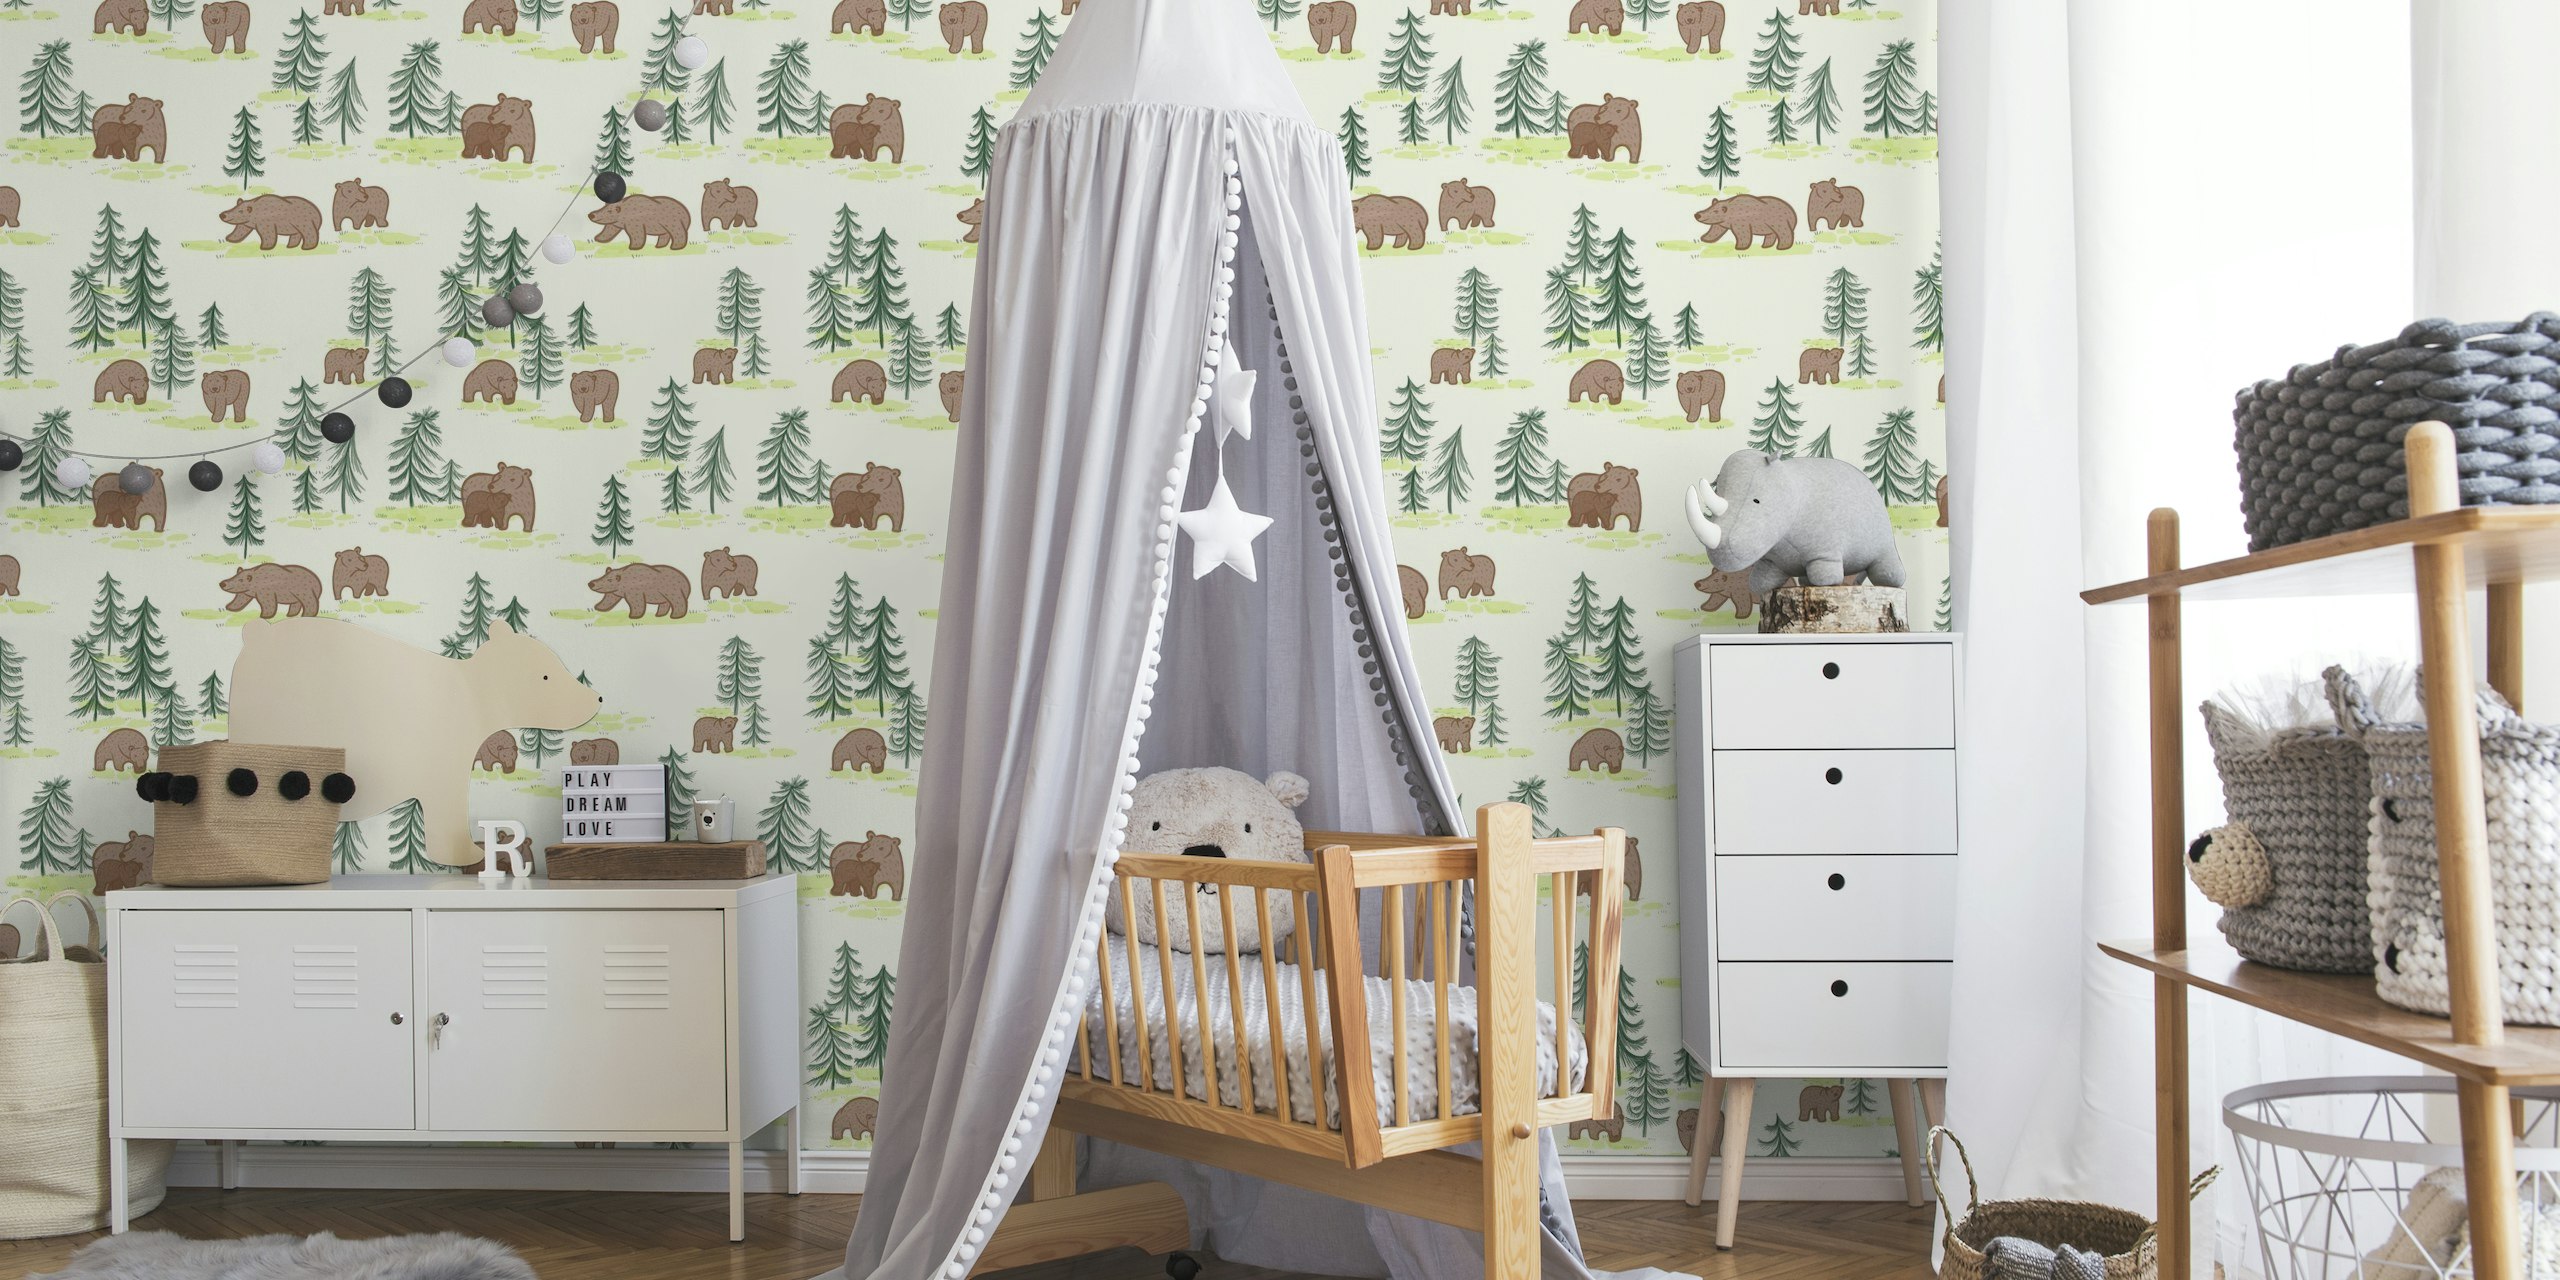 Fotomural ilustrado de osos y pinos para una decoración serena del hogar